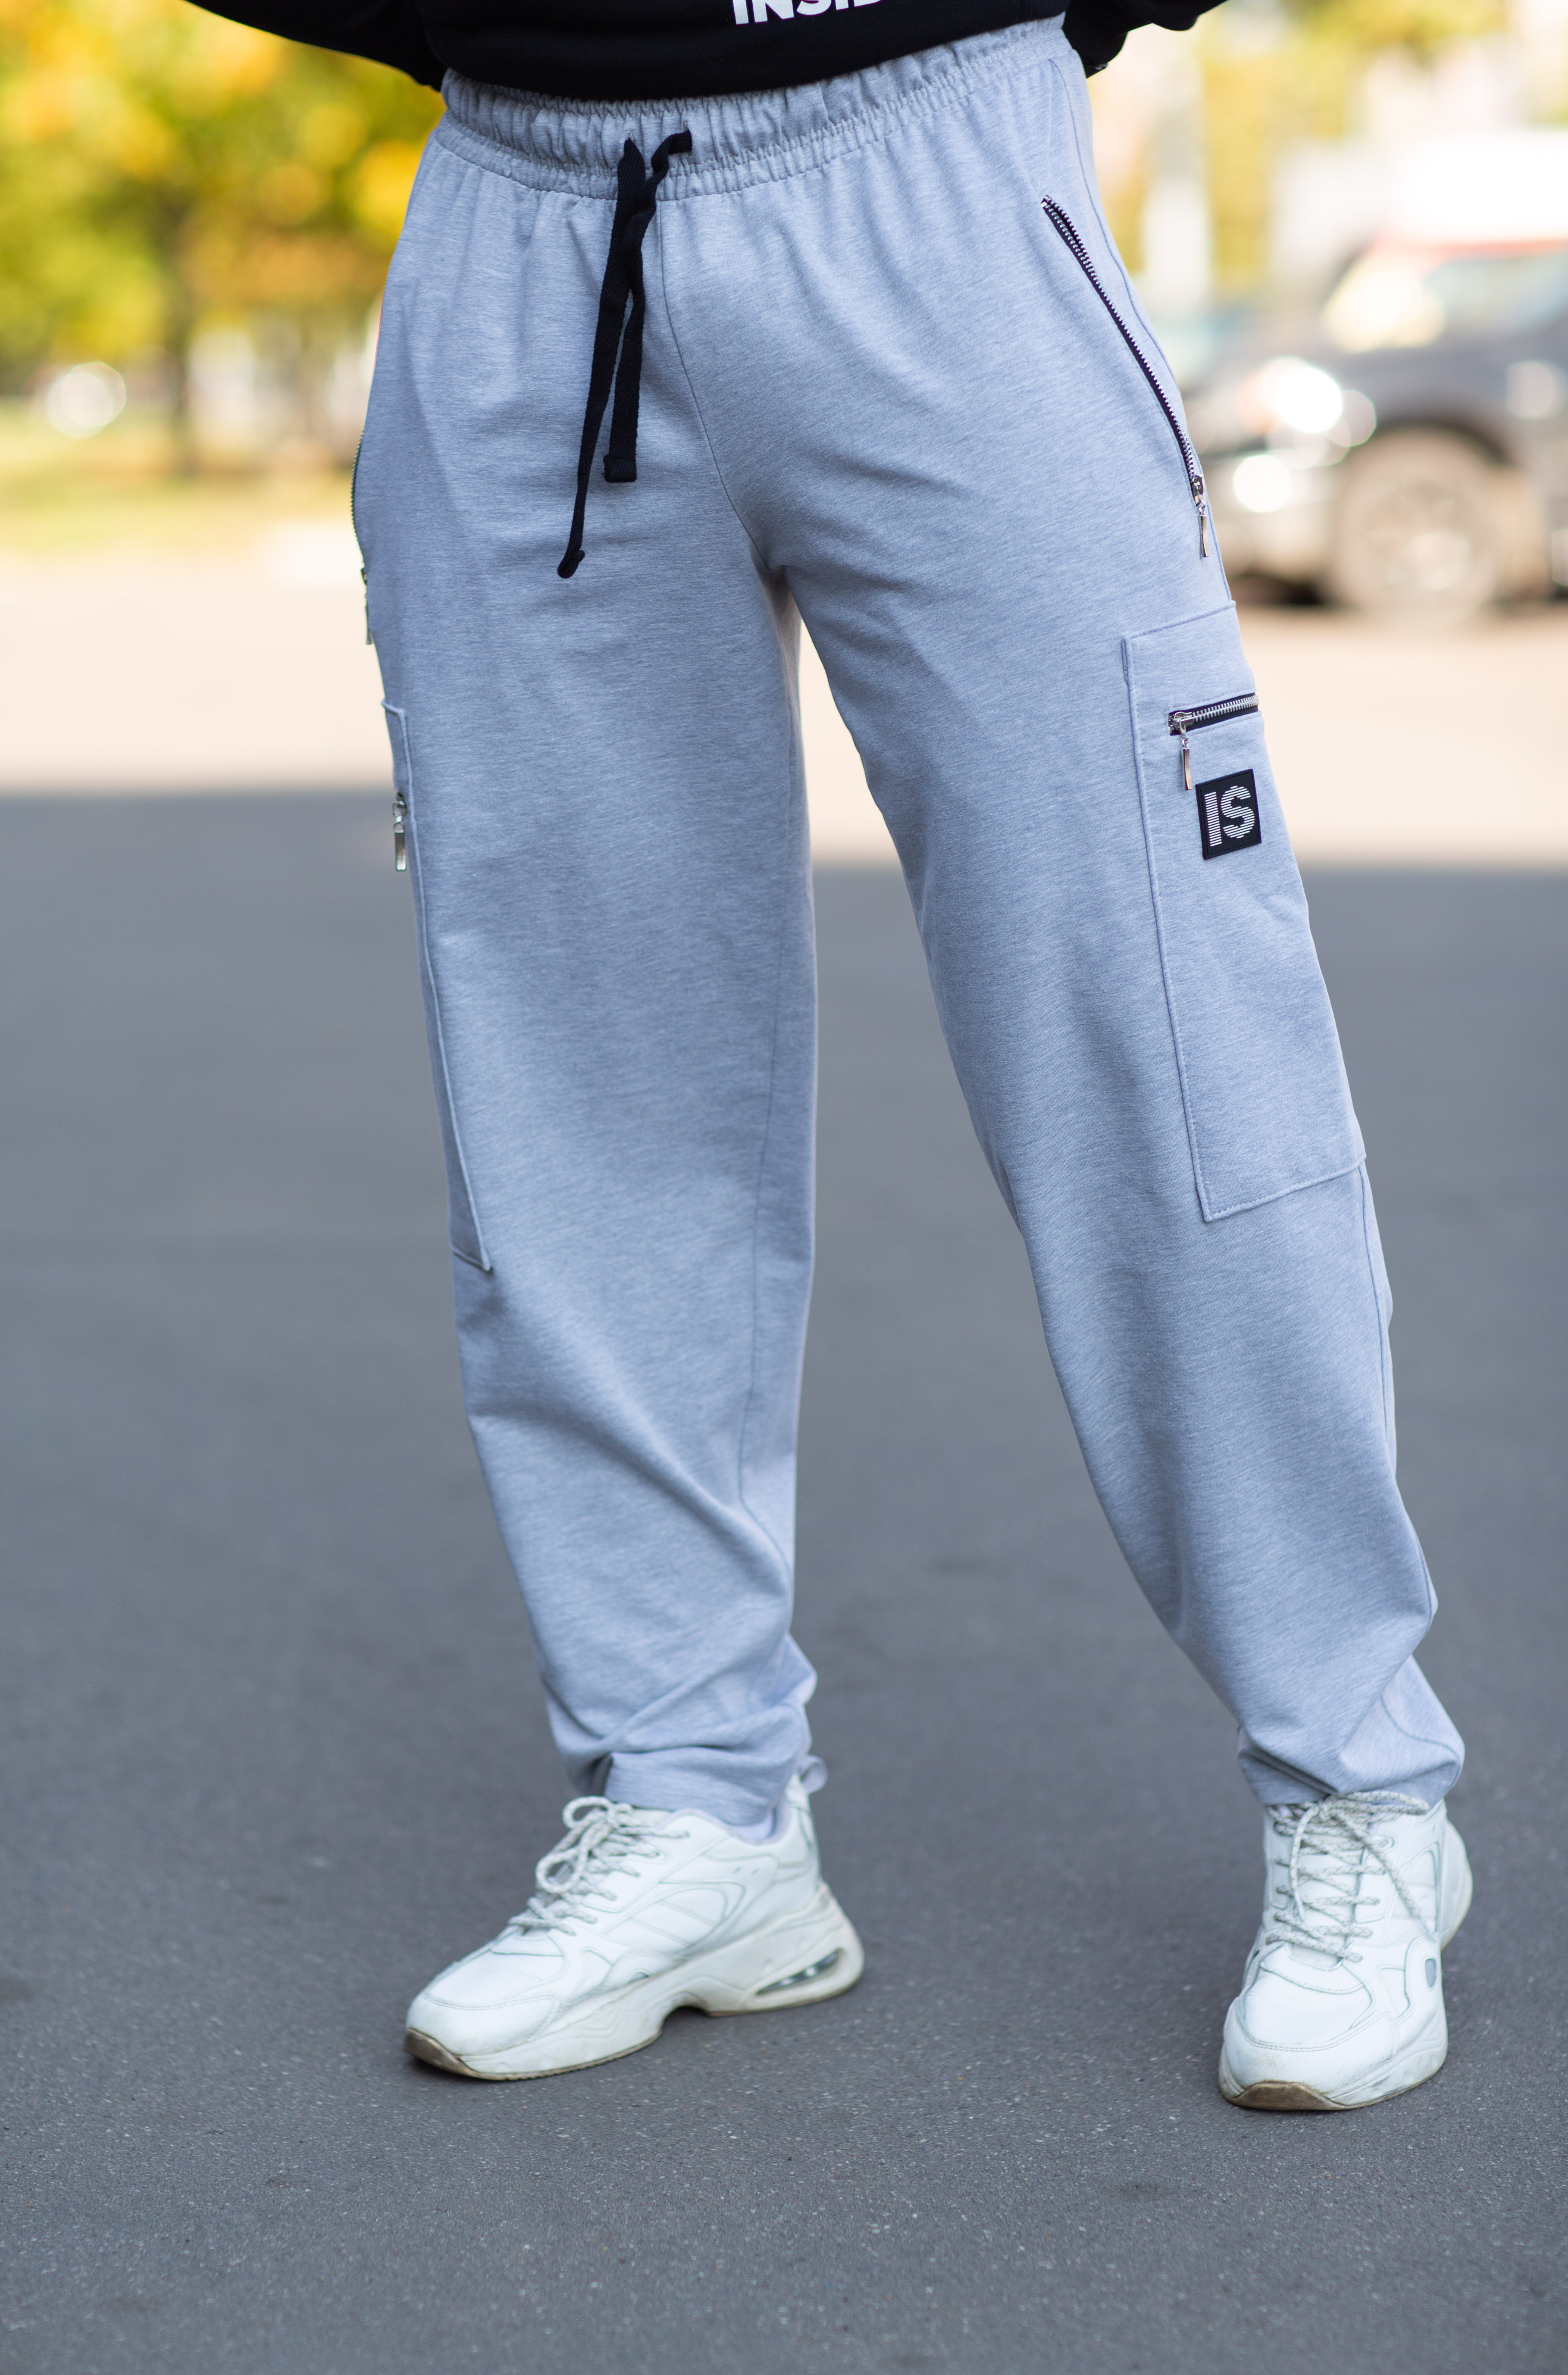 Спортивные брюки мужские INFERNO style Б-008-000 серые L